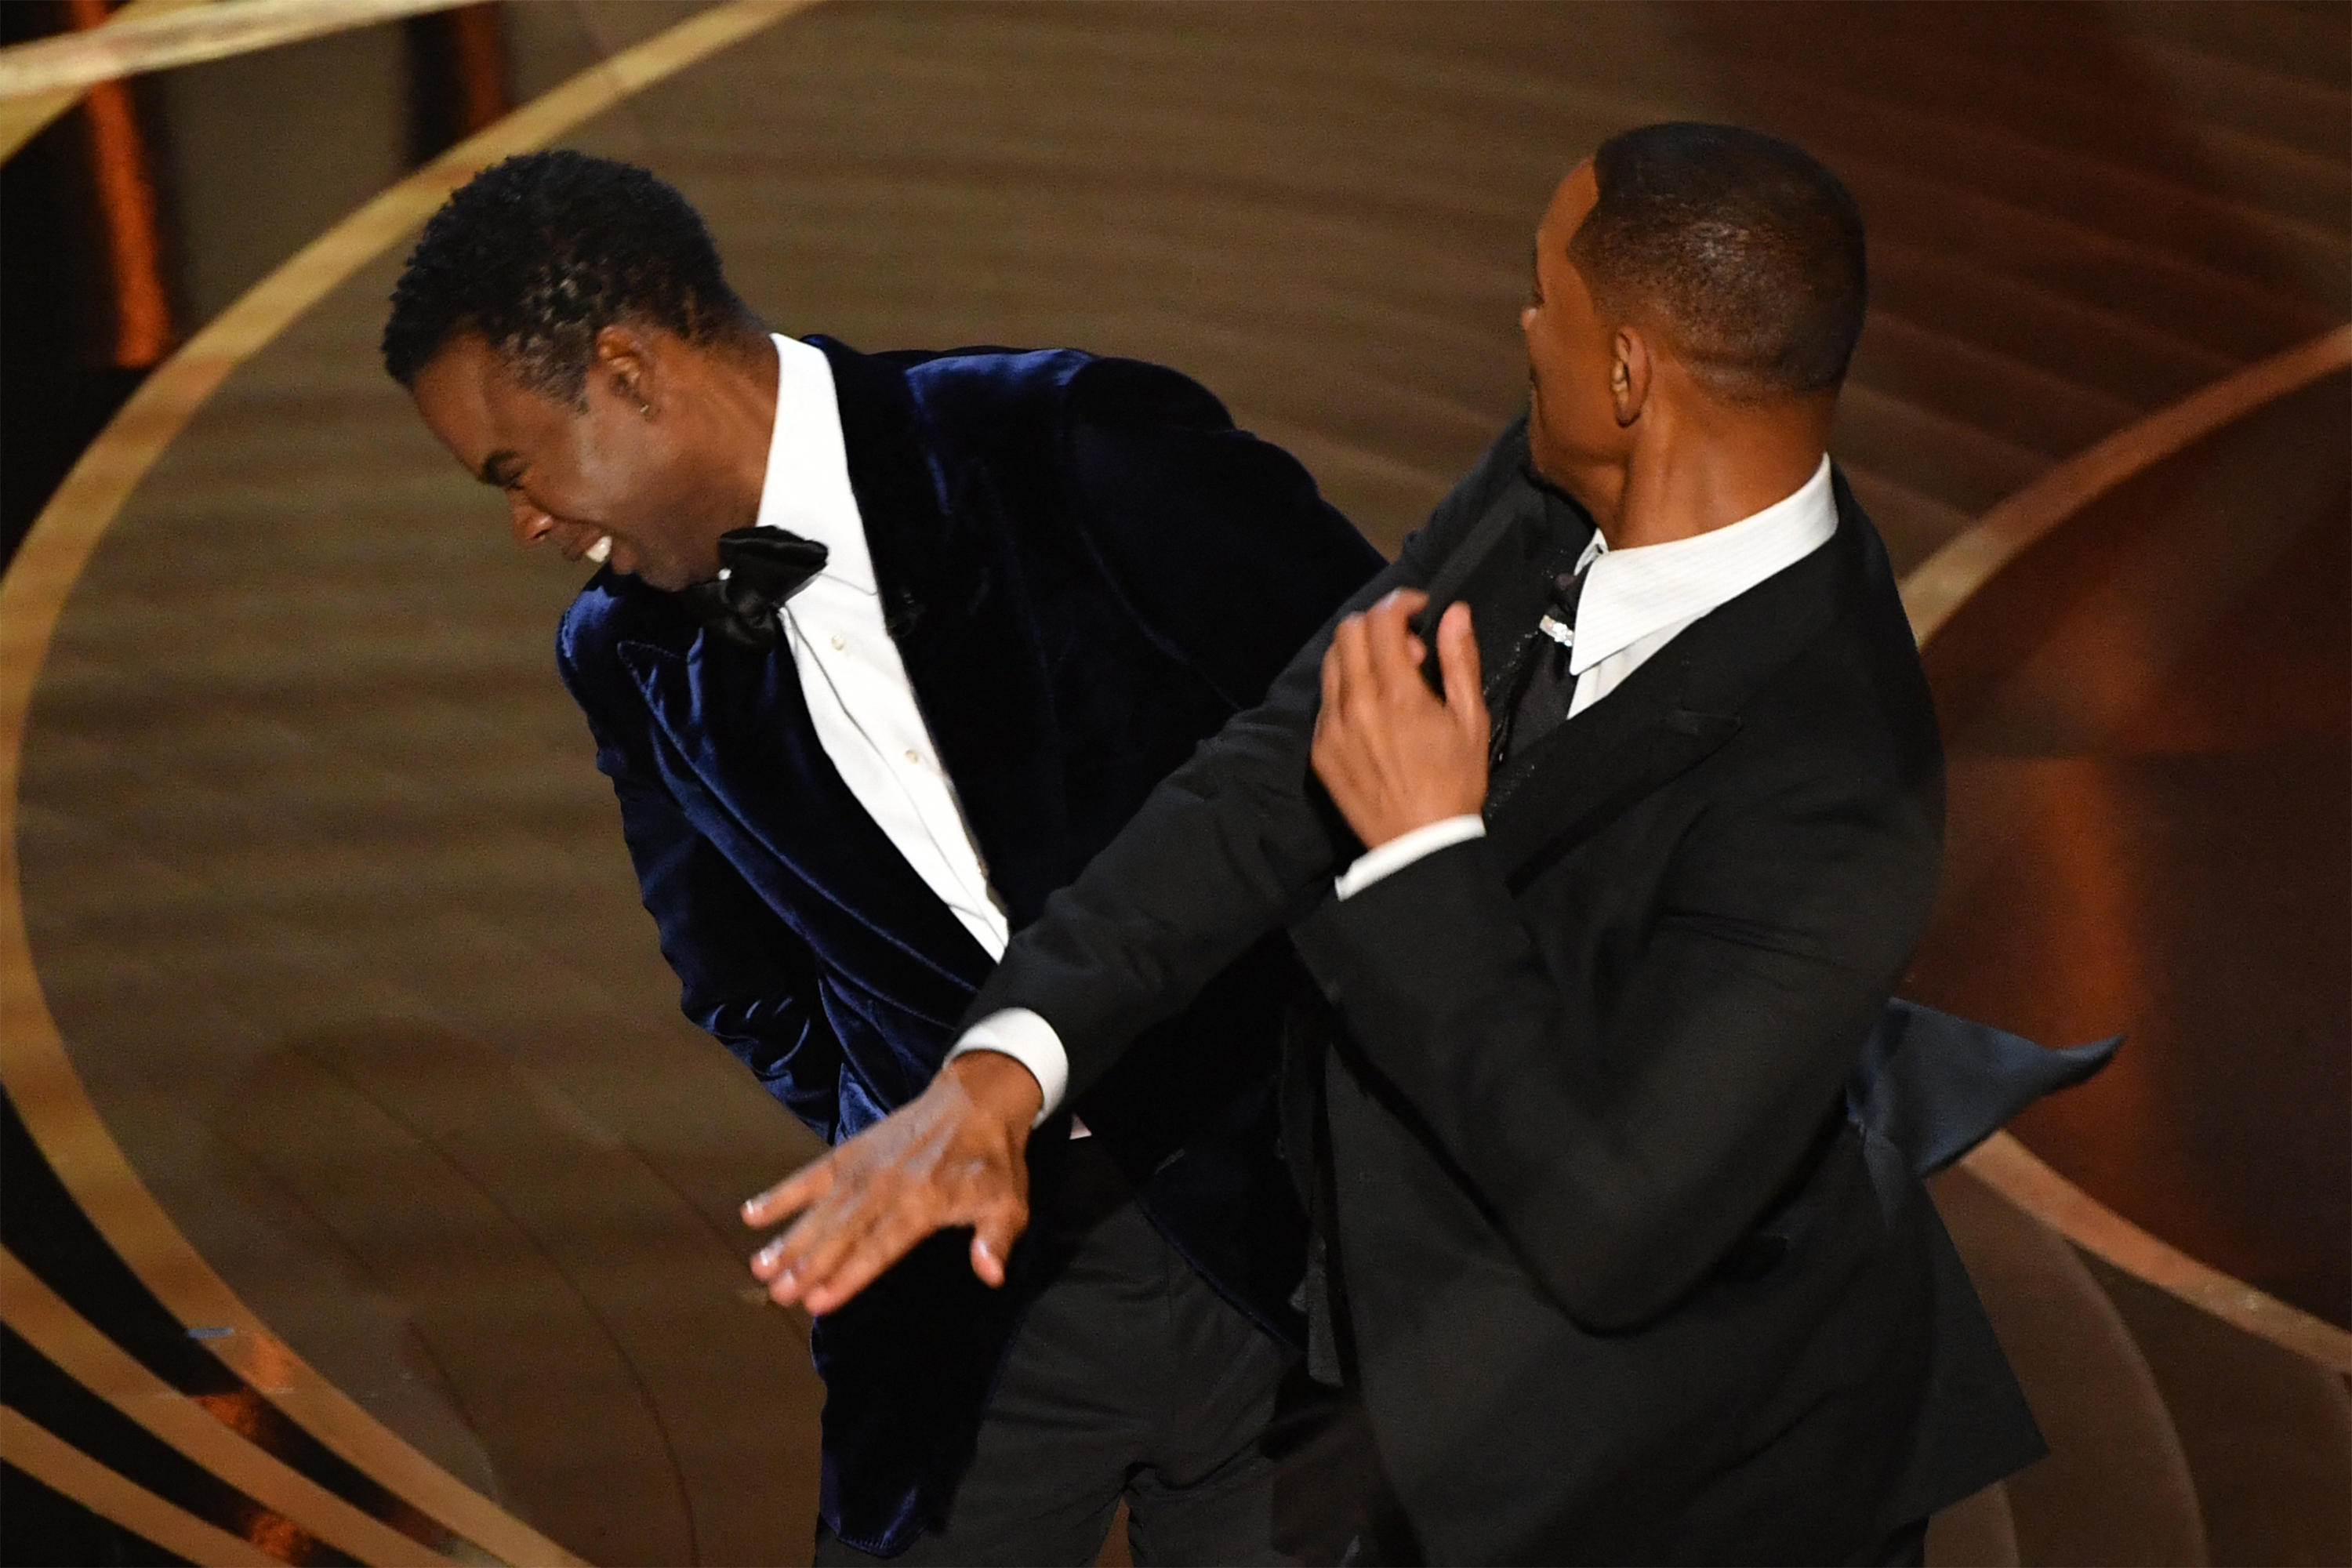 A tensão nos bastidores do Oscar após o tapa de Will Smith | VEJA